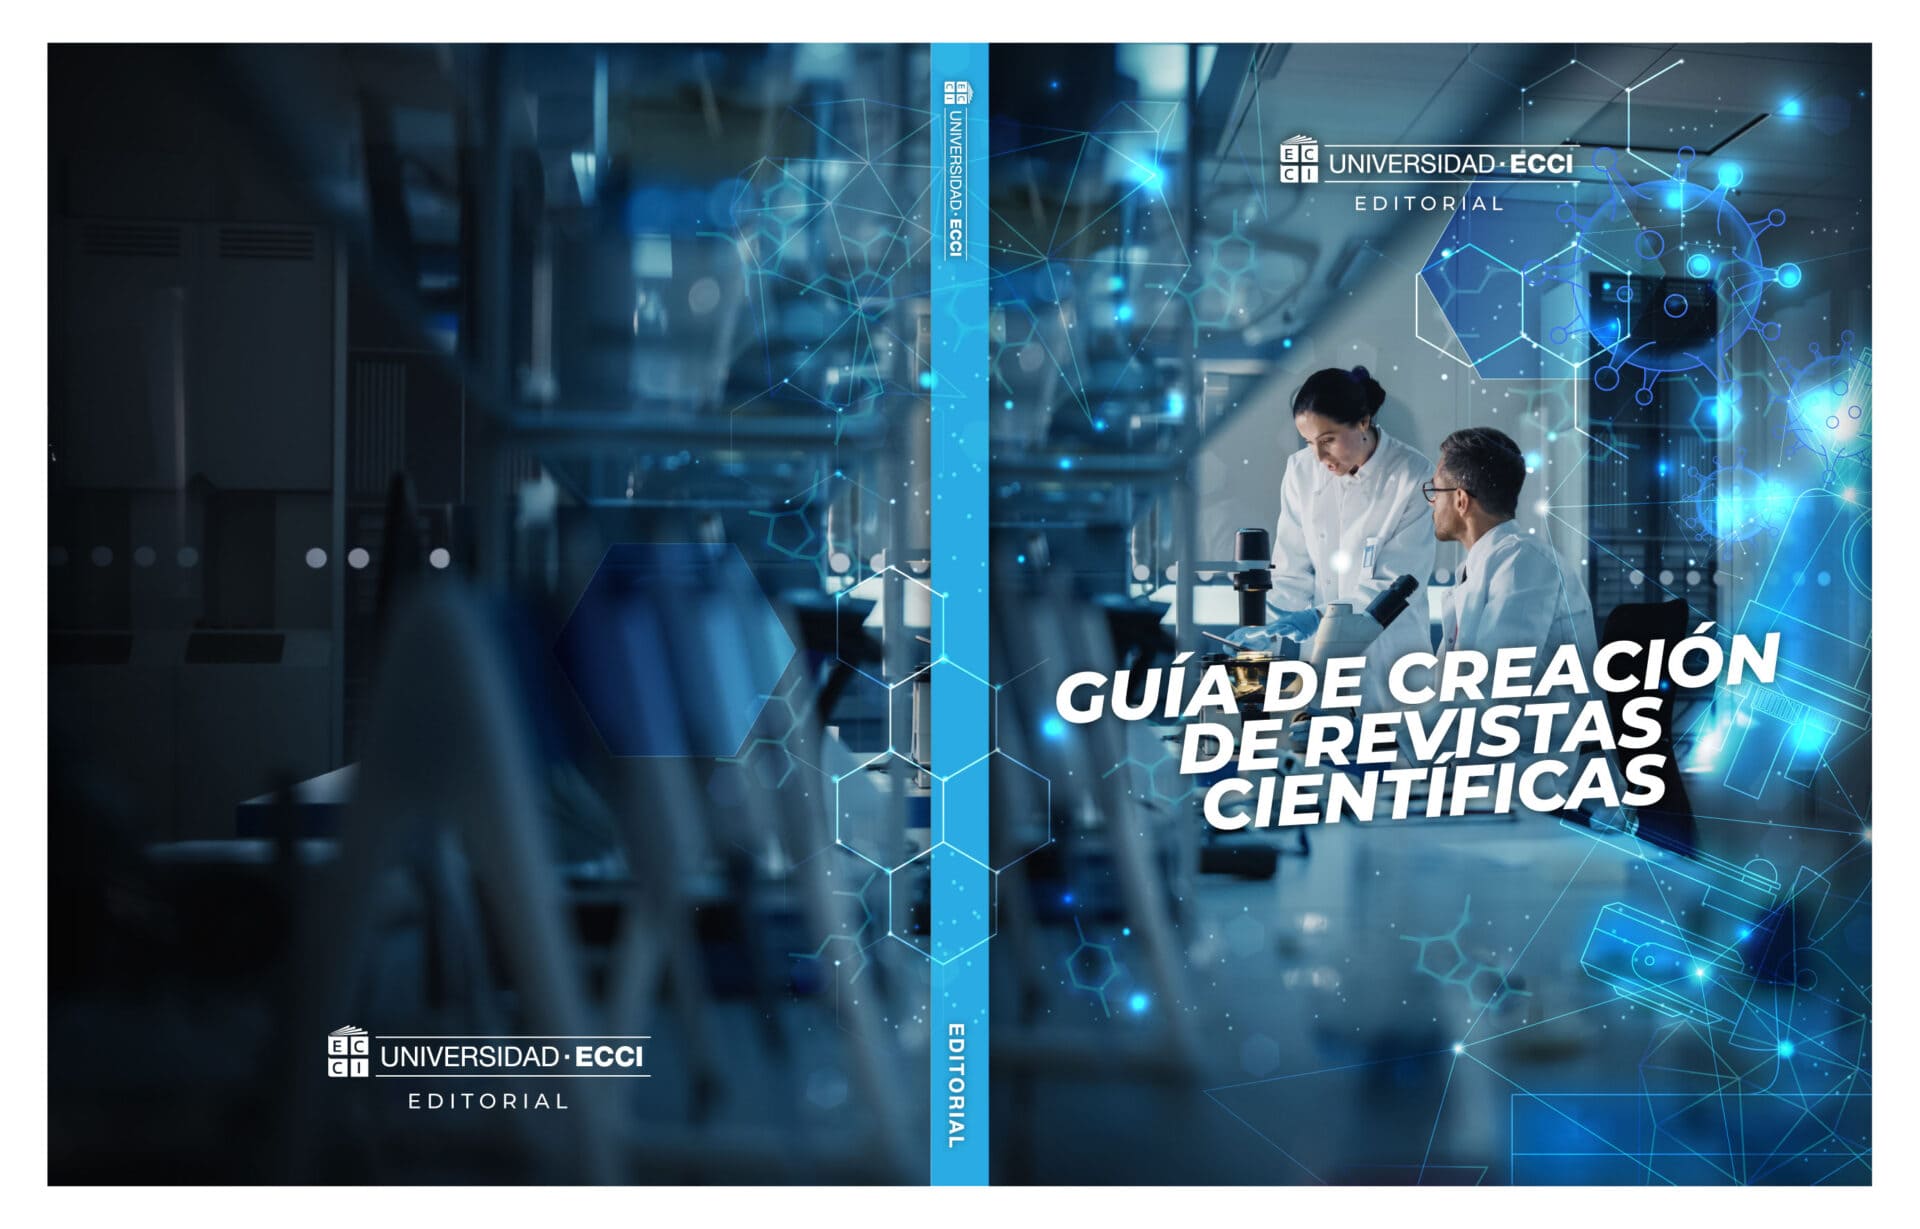 guia creacion revistas cientificas EDITORIAL ECCI